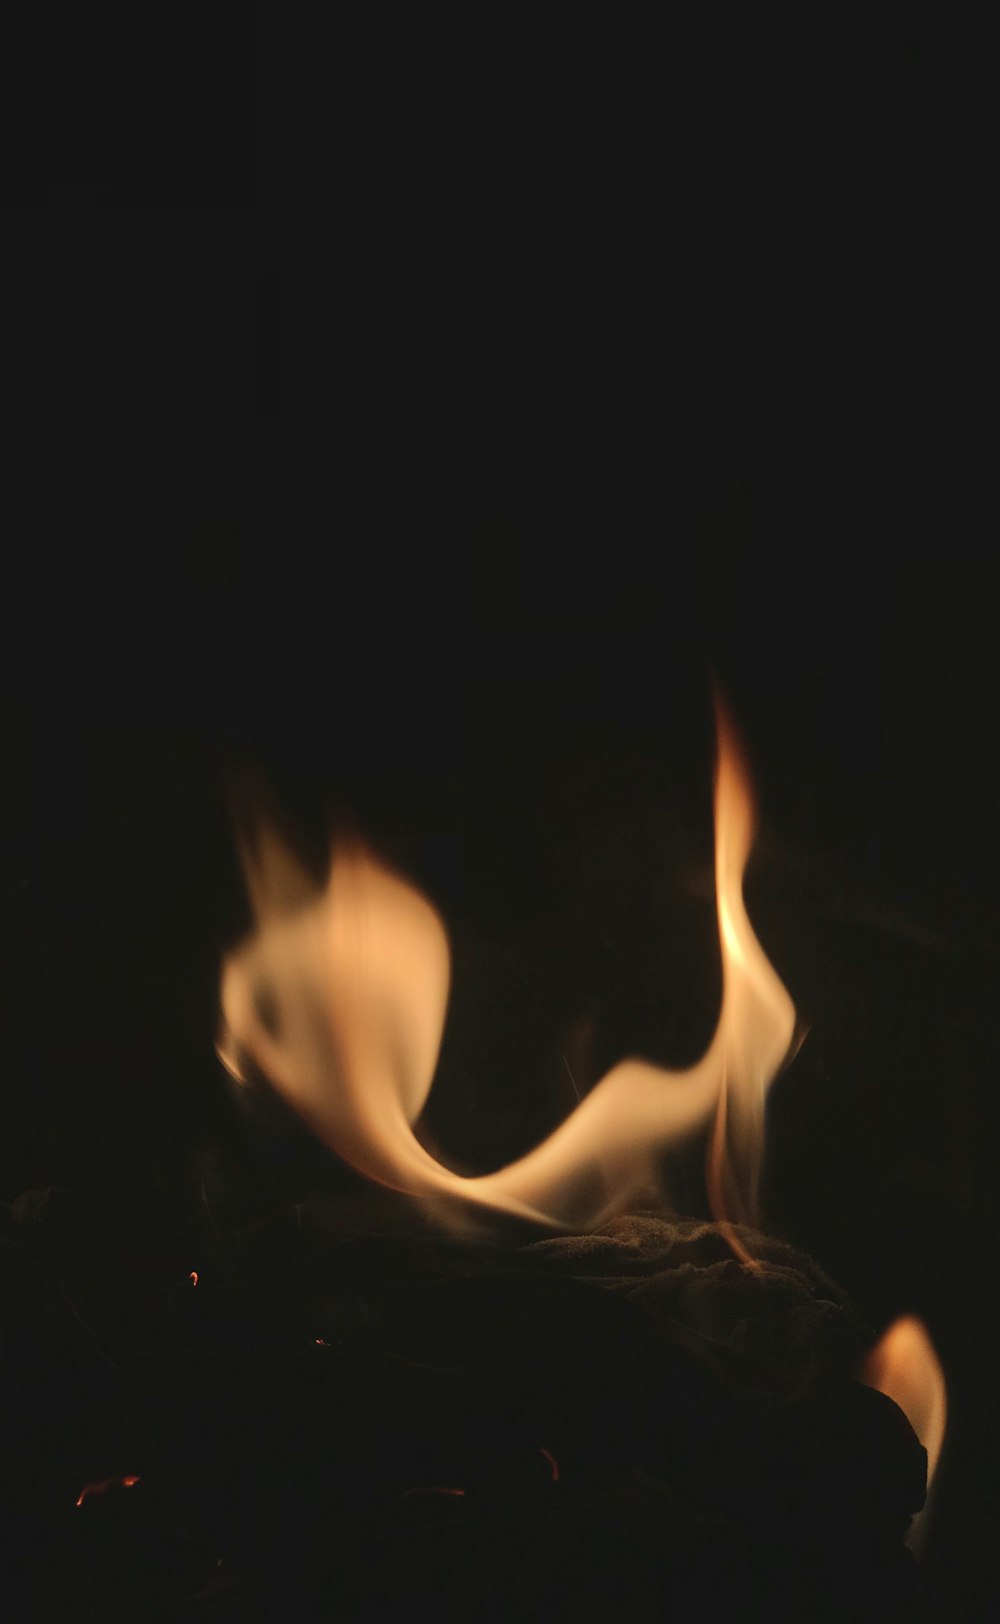 fuoco al buio durante la notte